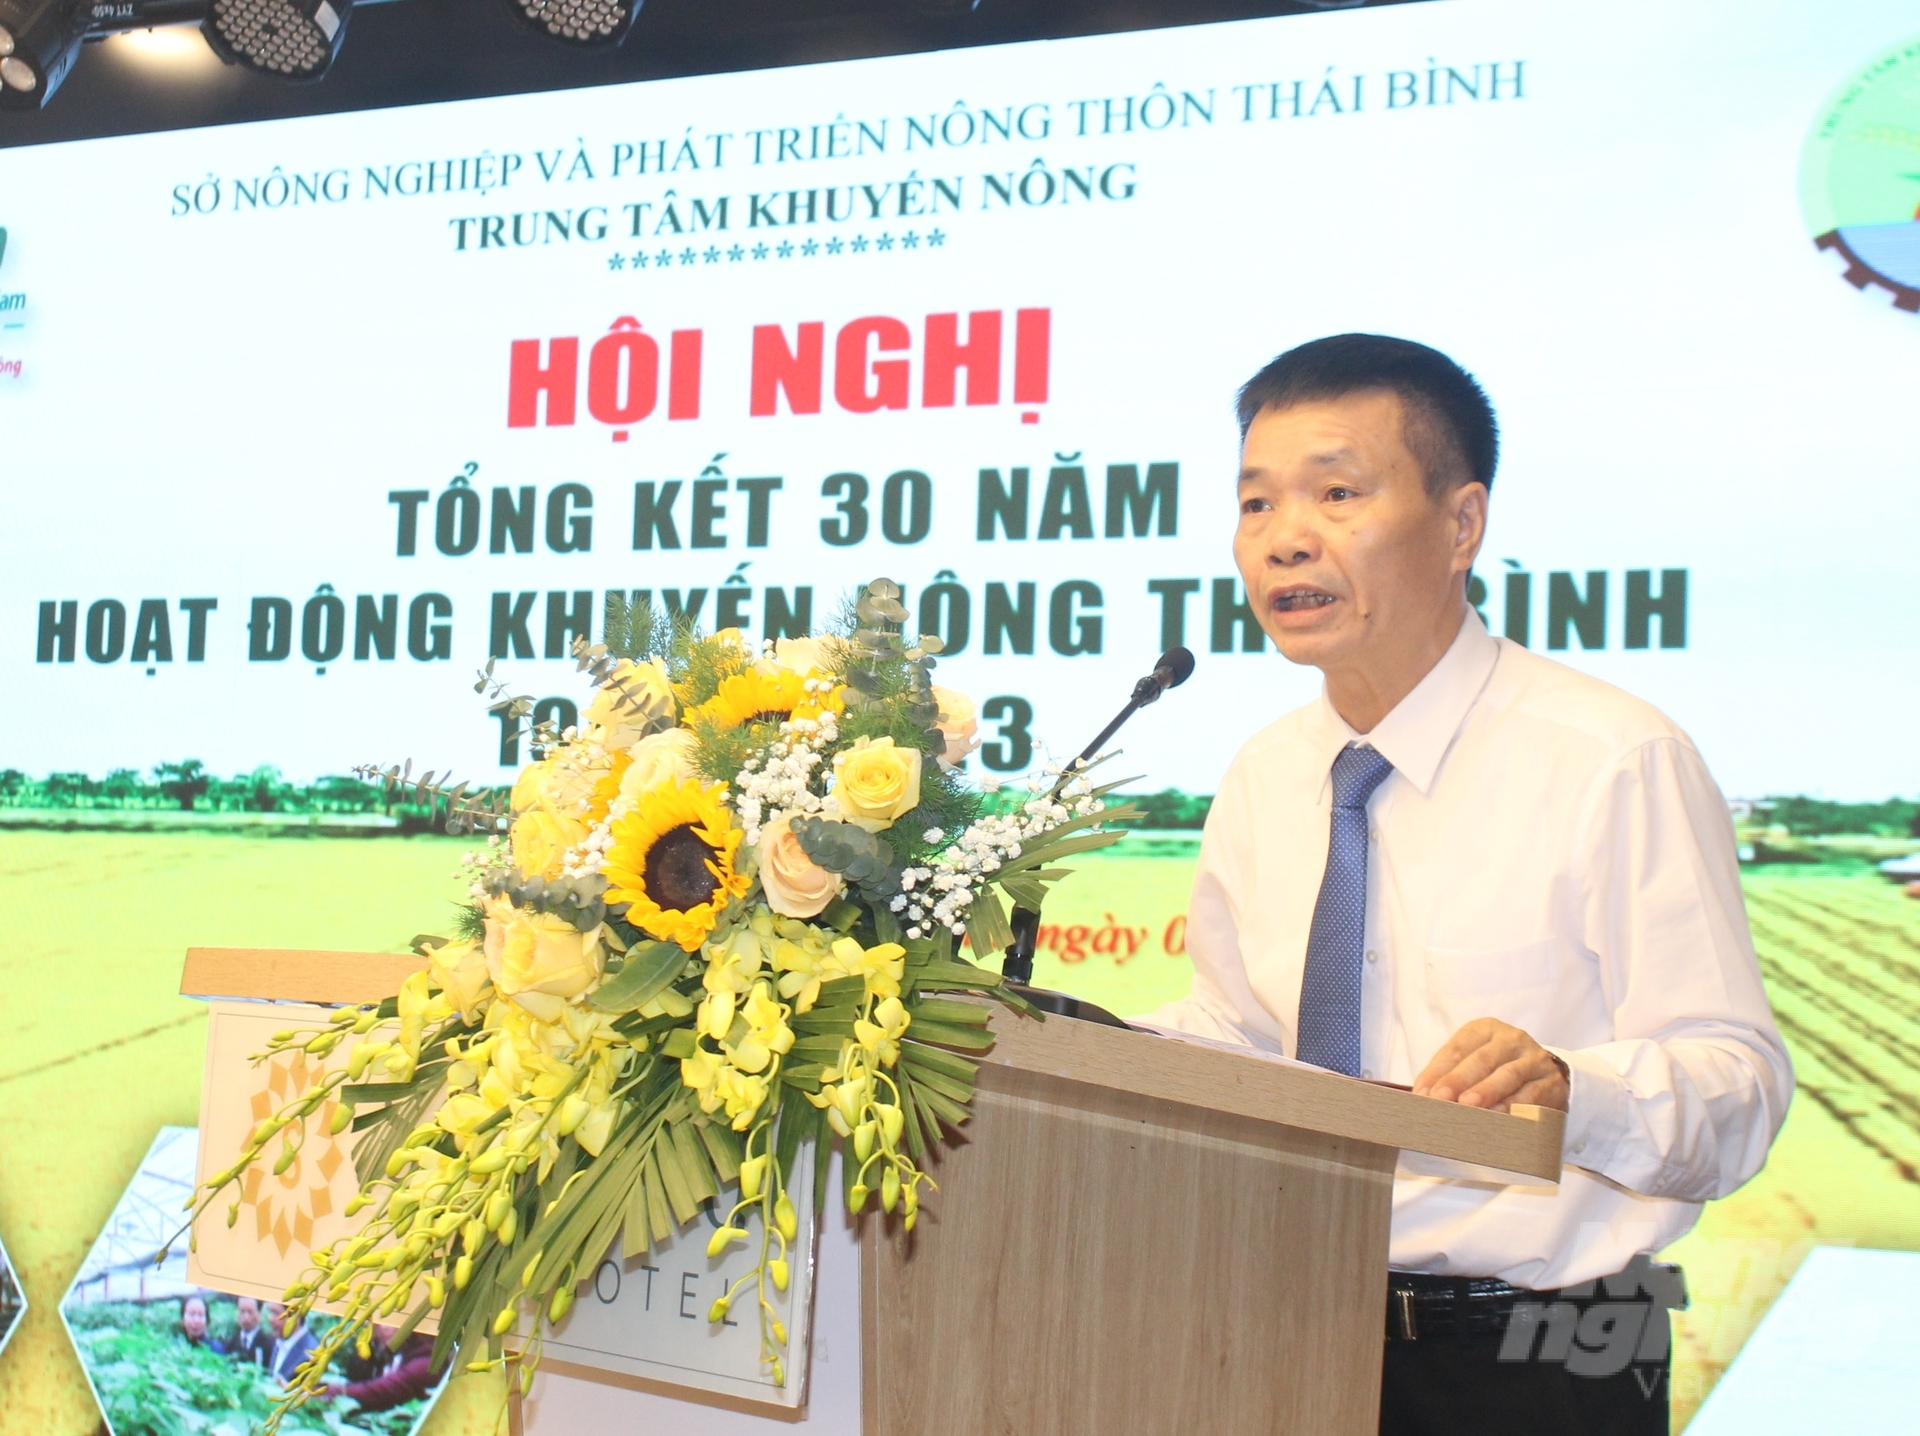 Ông Trần Minh Hưng, Giám đốc Trung tâm Khuyến nông Thái Bình chia sẻ về chặng đường hình thành và phát triển của Trung tâm trong 30 năm qua. Ảnh: Trung Quân.